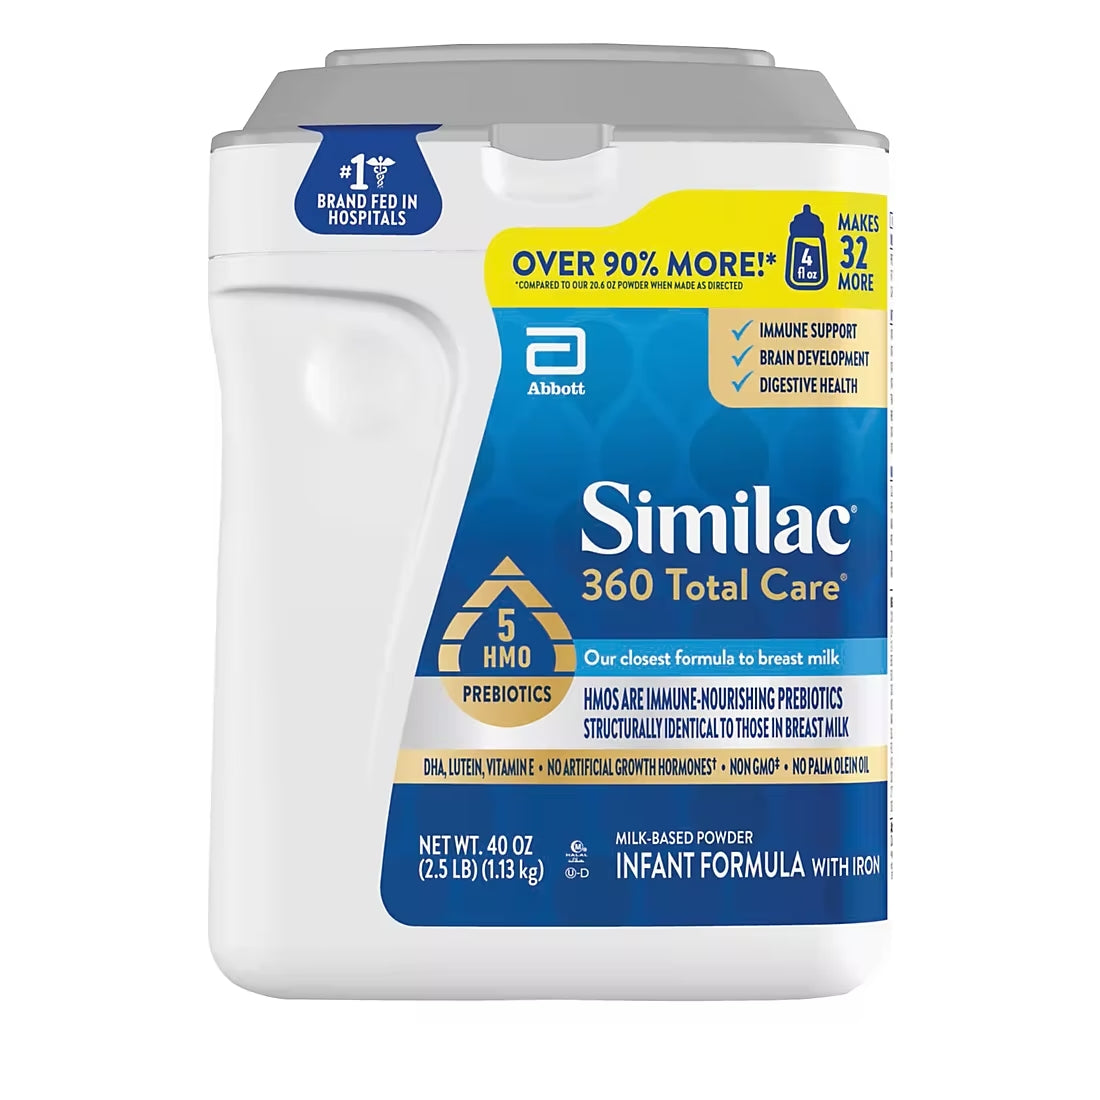 Similac 360 Total Care Milk Based Powder Infant Formula- 1.13kg (40oz)